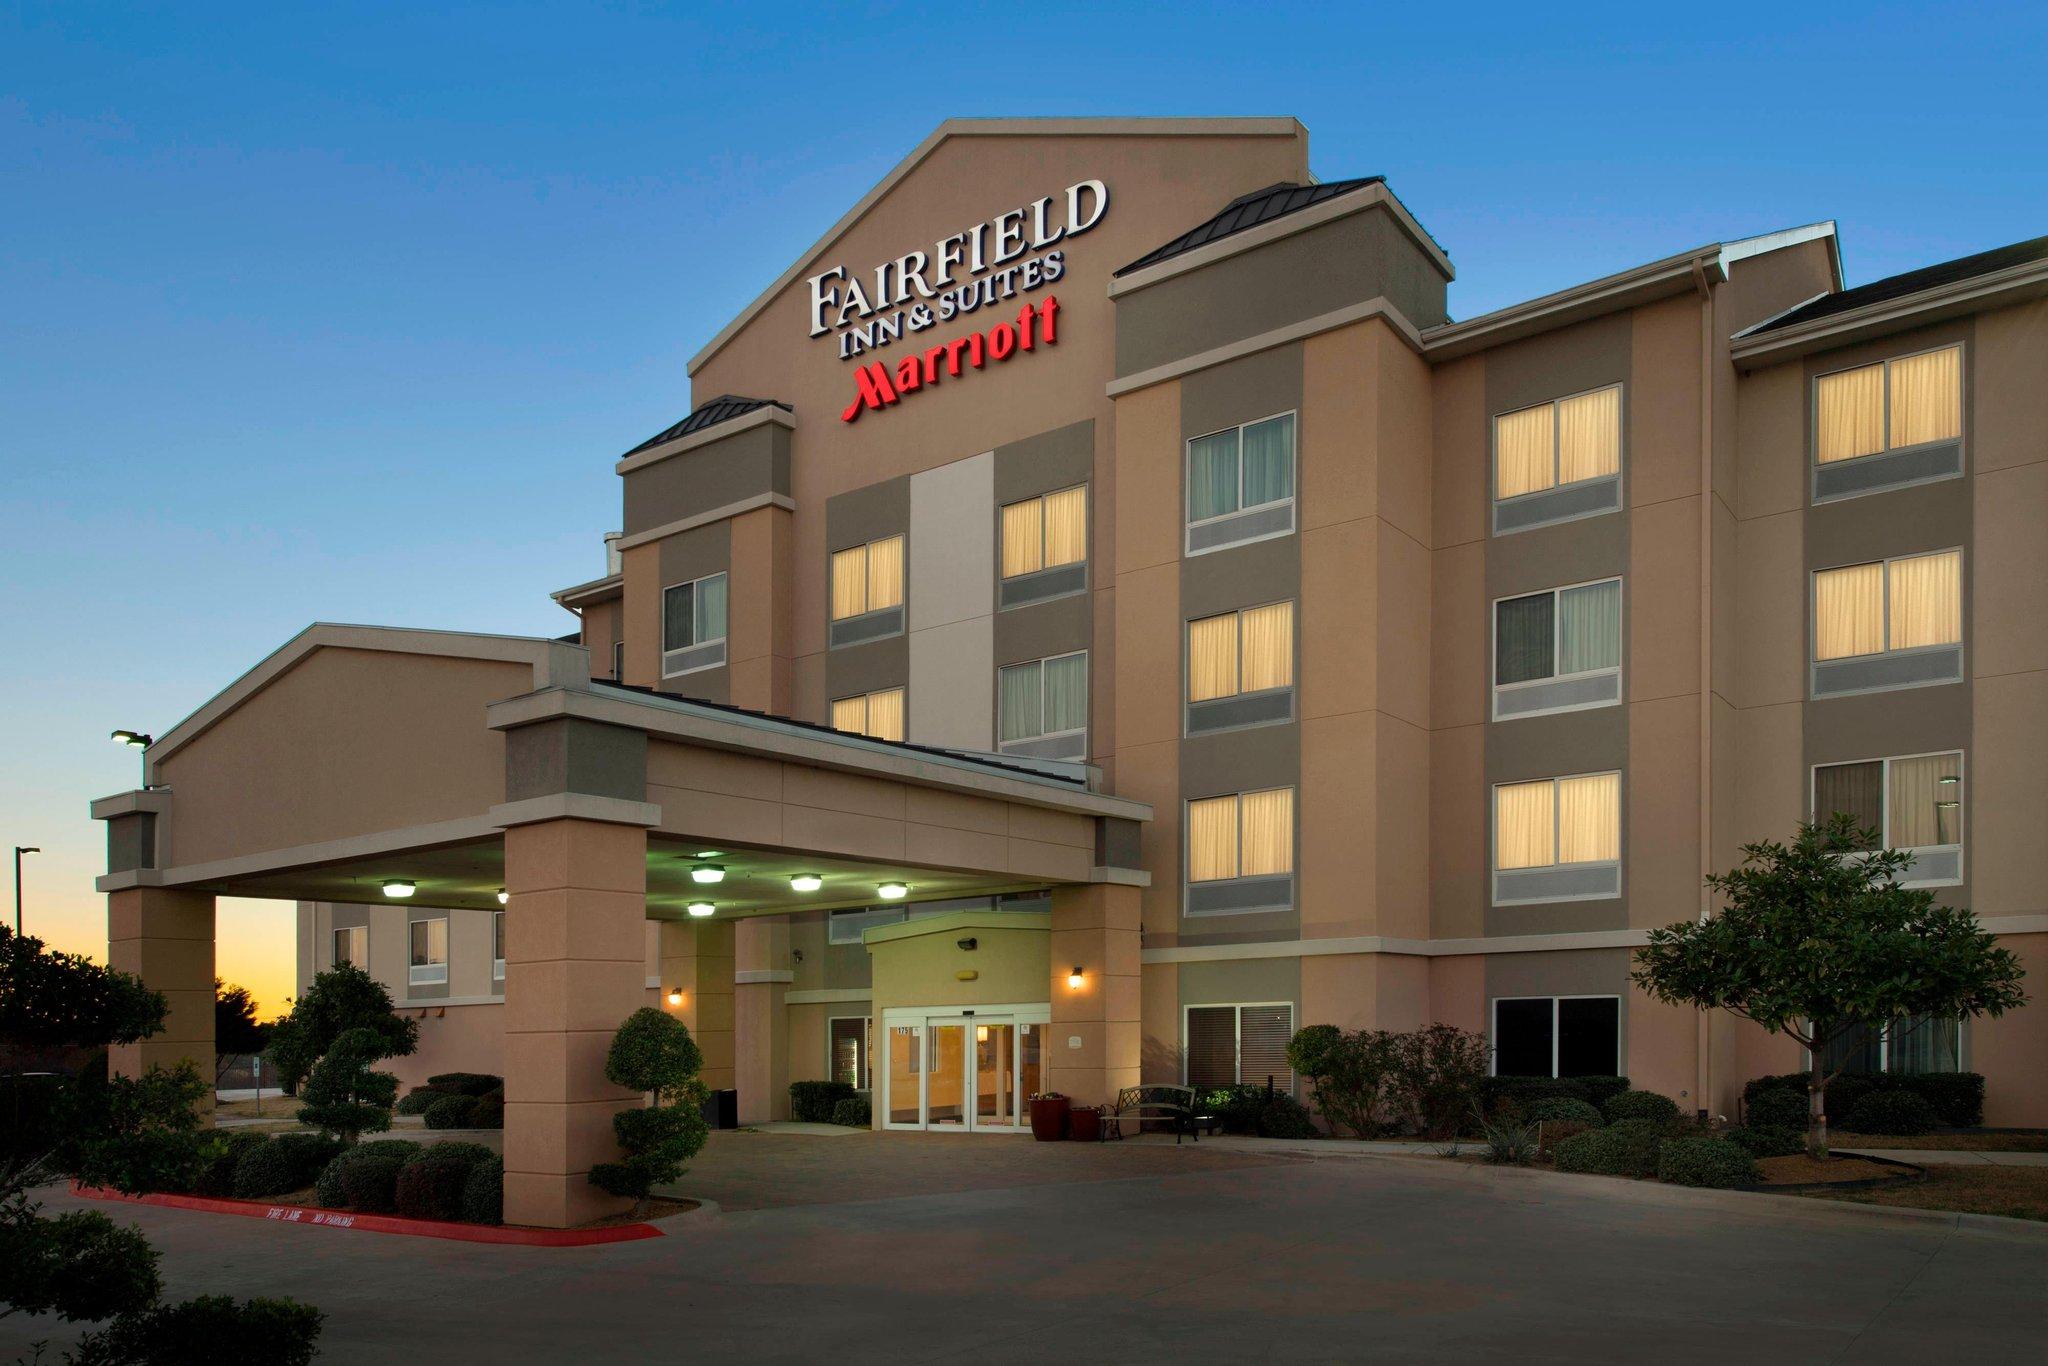 Fairfield Inn & Suites Weatherford in Weatherford, TX